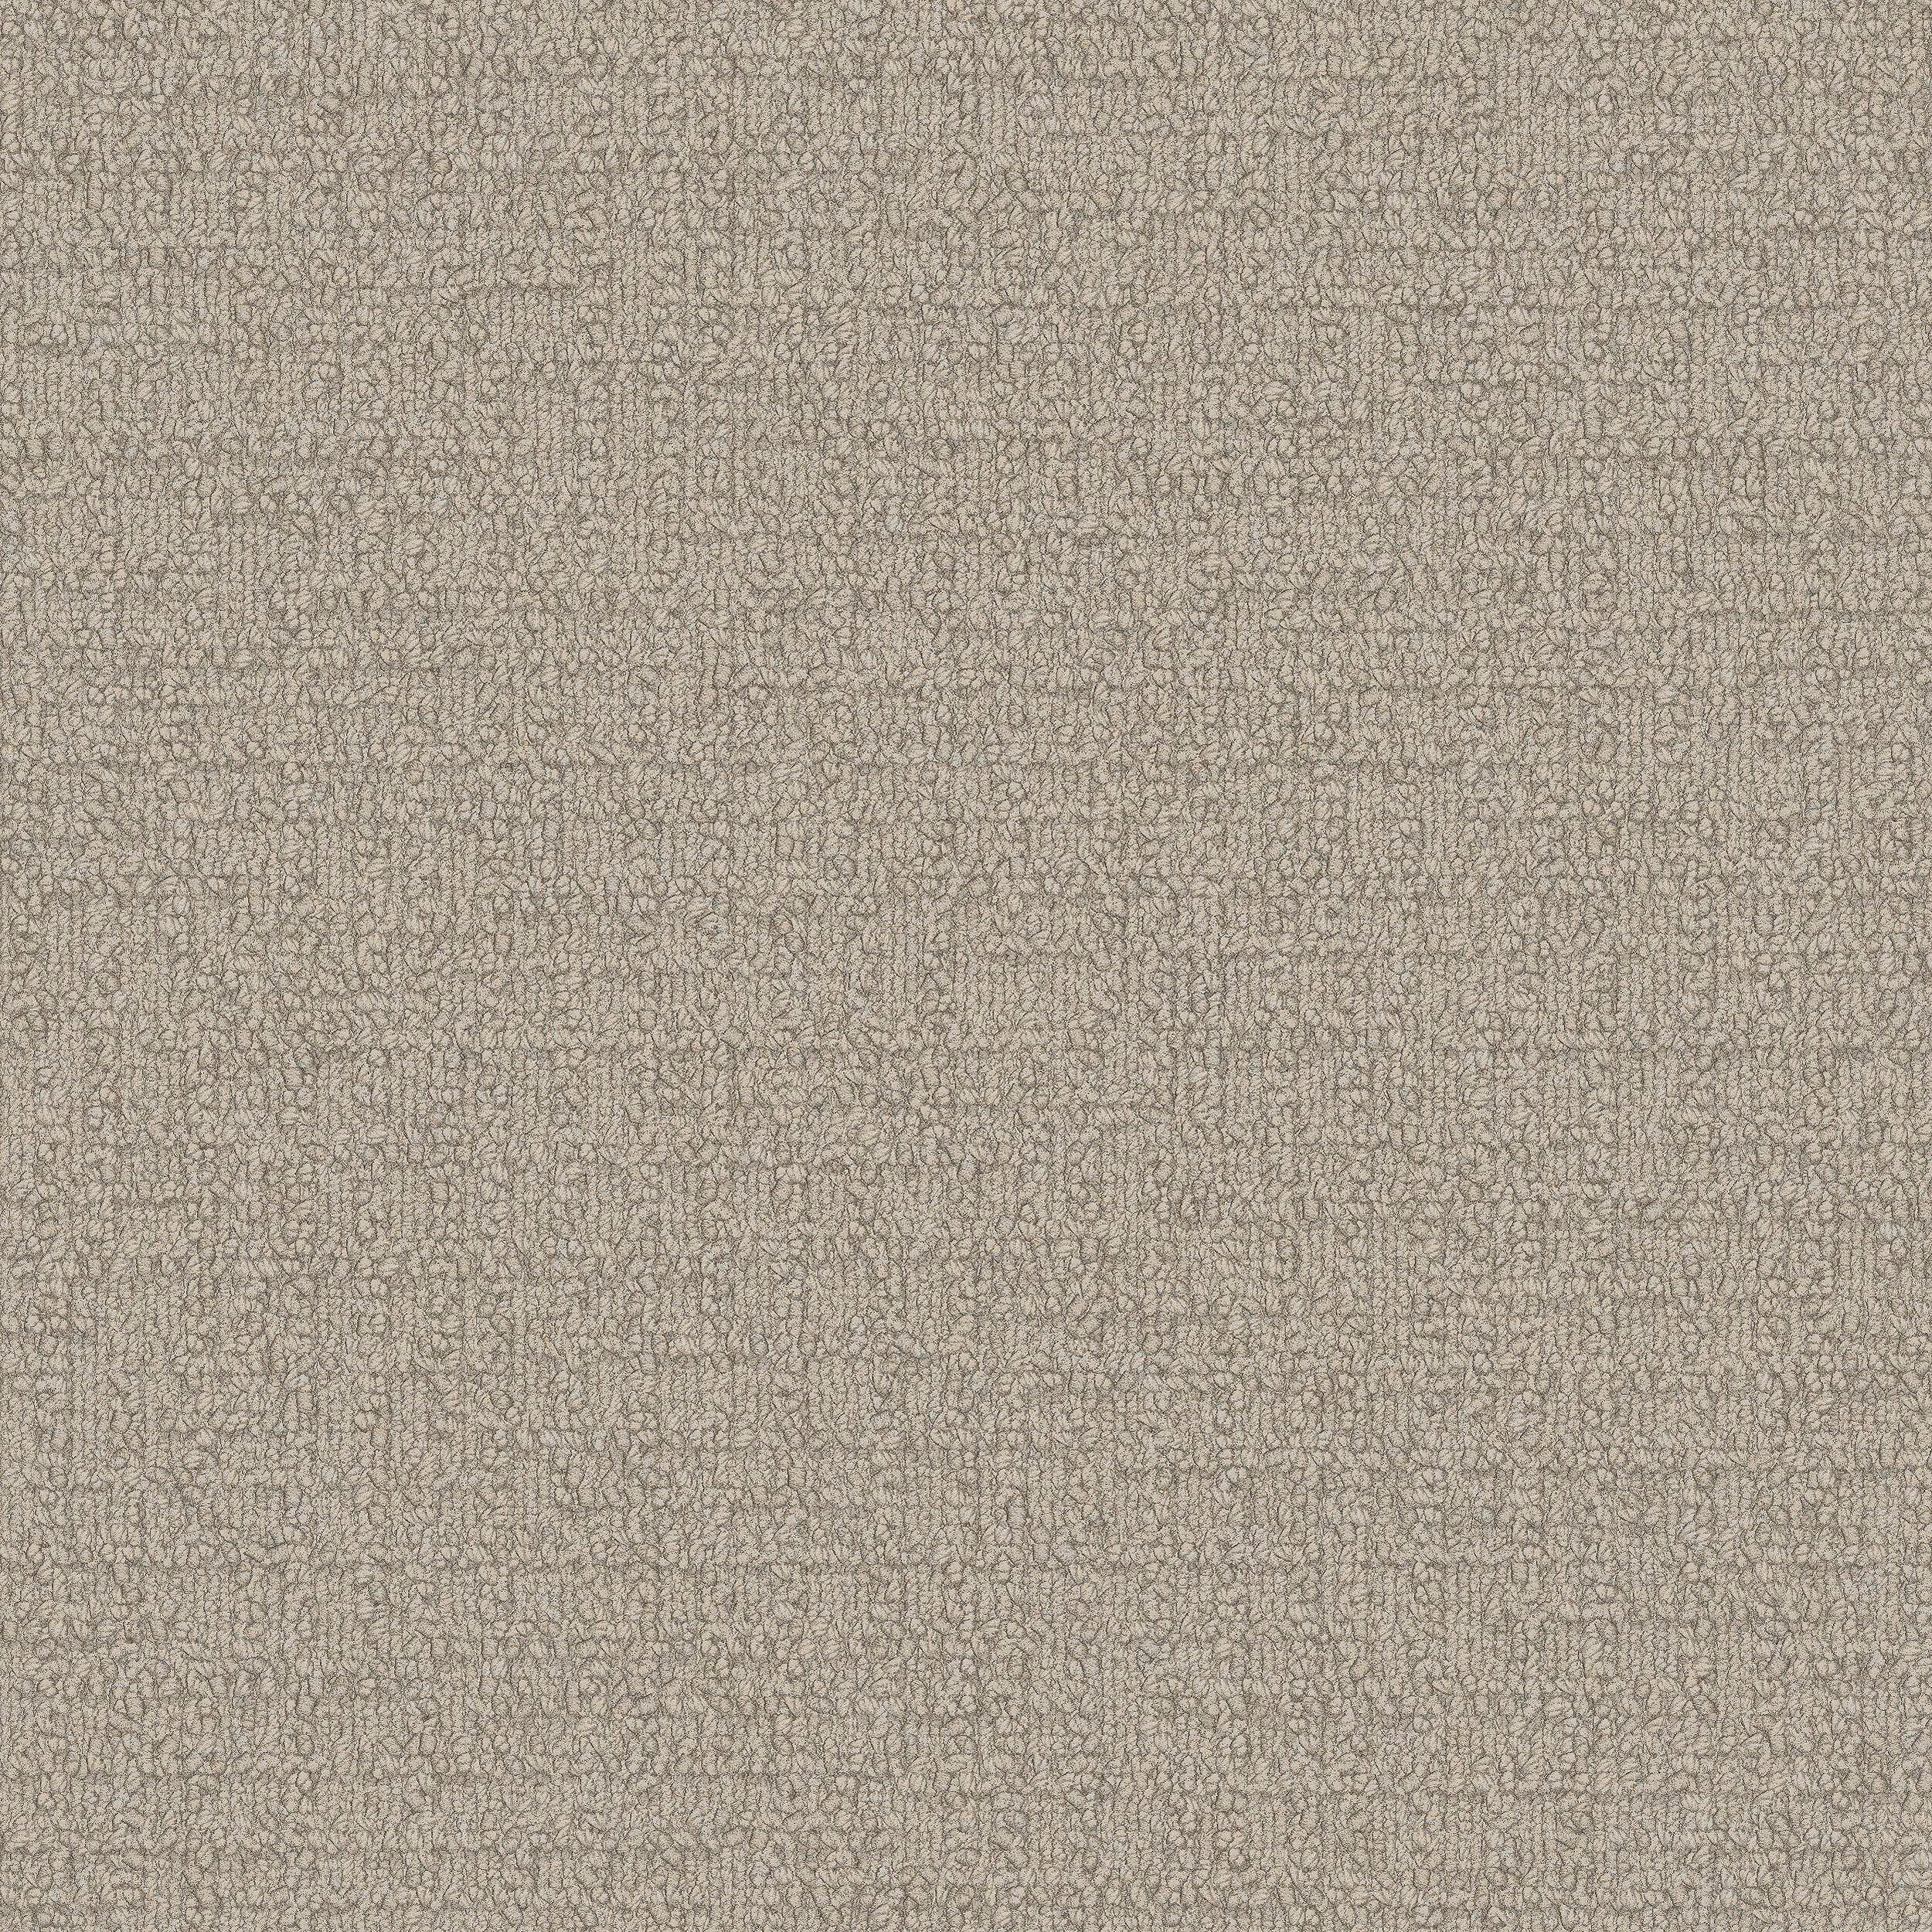 Monochrome Carpet Tile In Cream Bildnummer 9